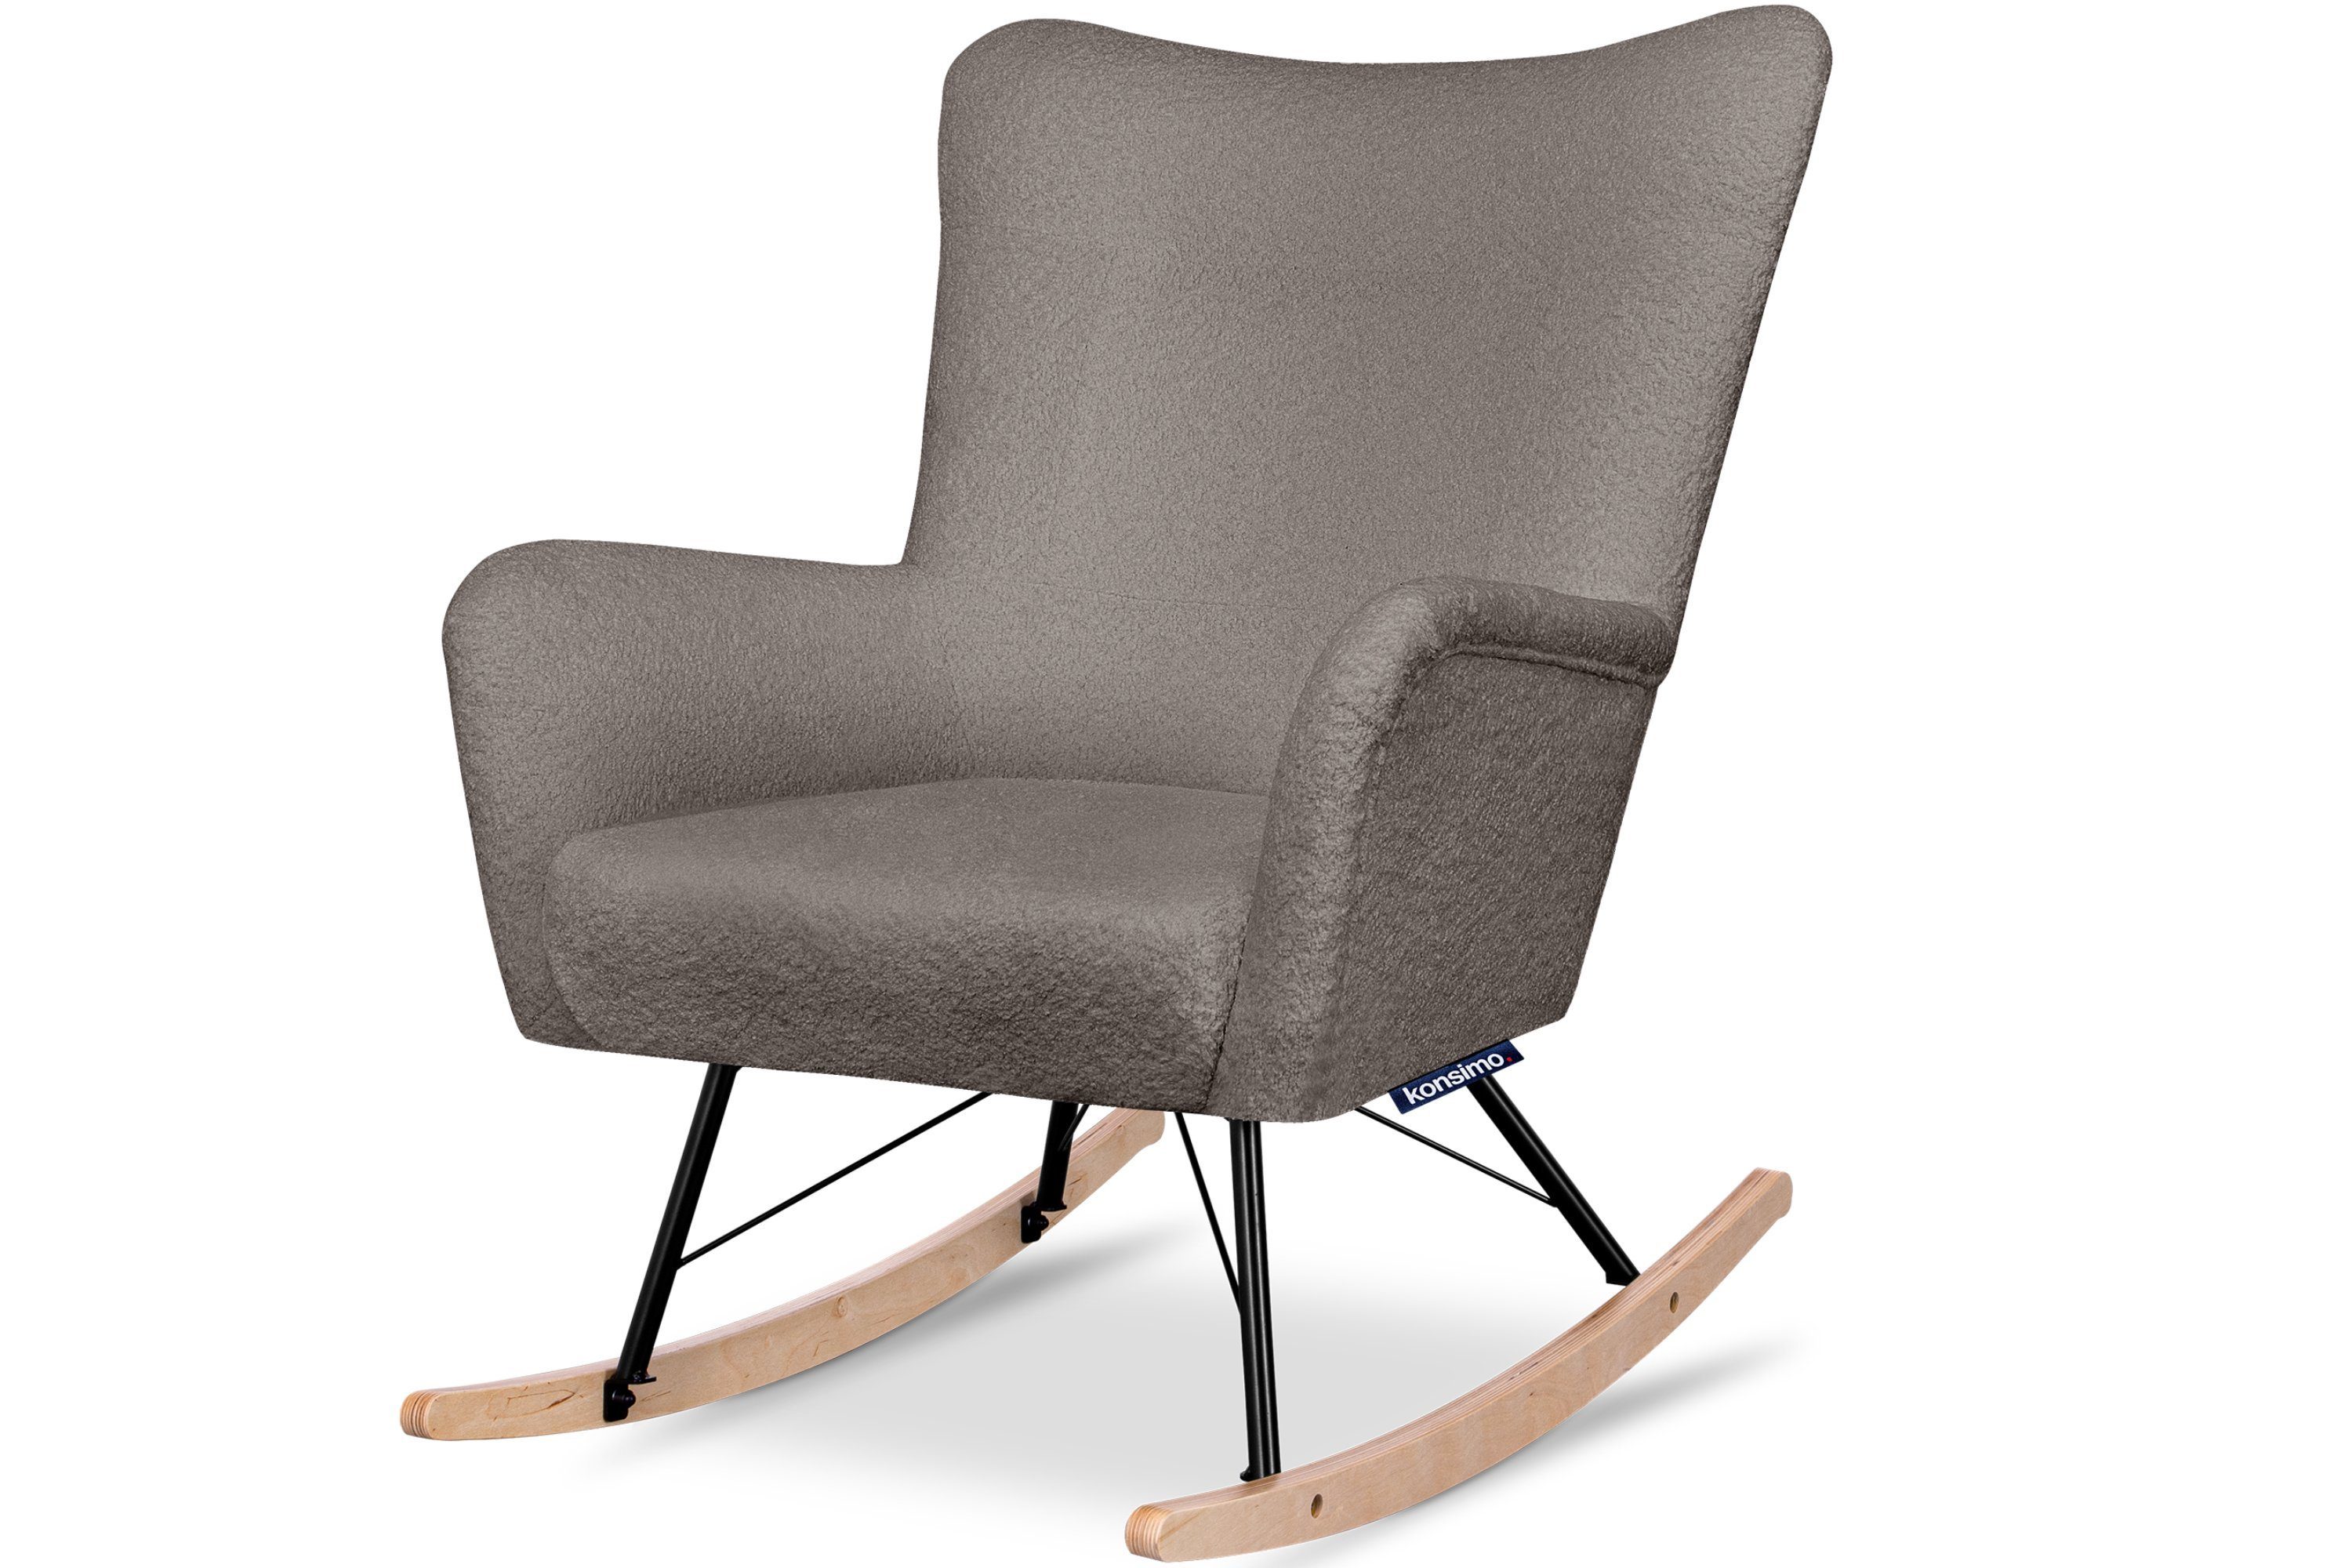 Konsimo Schaukelsessel ADDUCTI Stillsessel, breiter Sitz für mehr Komfort, ein Schaukelstuhl für jeden Stil, Hergestellt in EU braun | braun